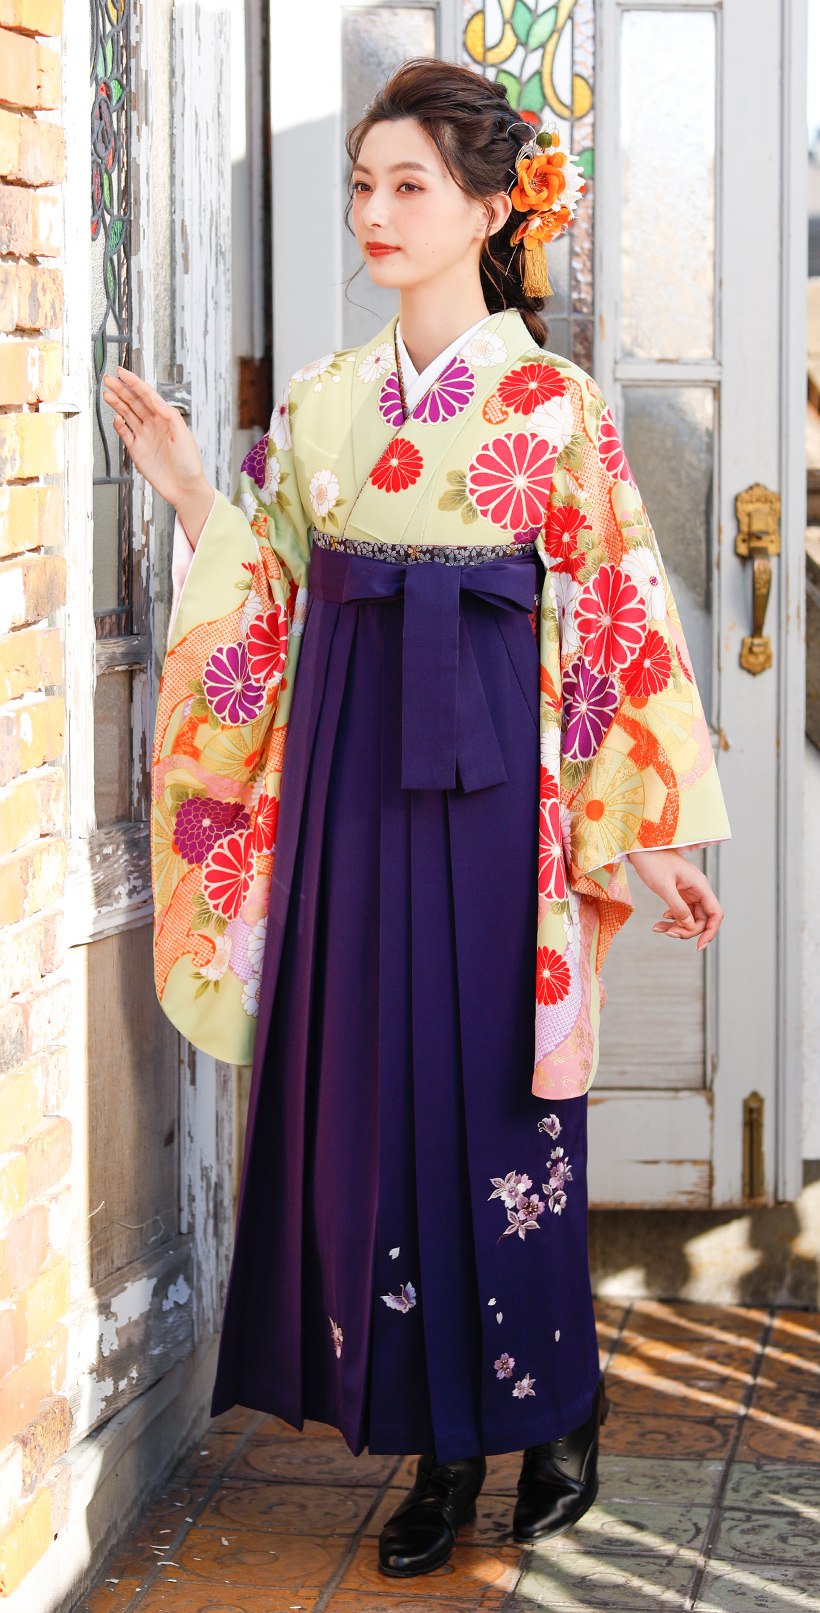 着物の柄の色と袴の色を合わせたスタイル